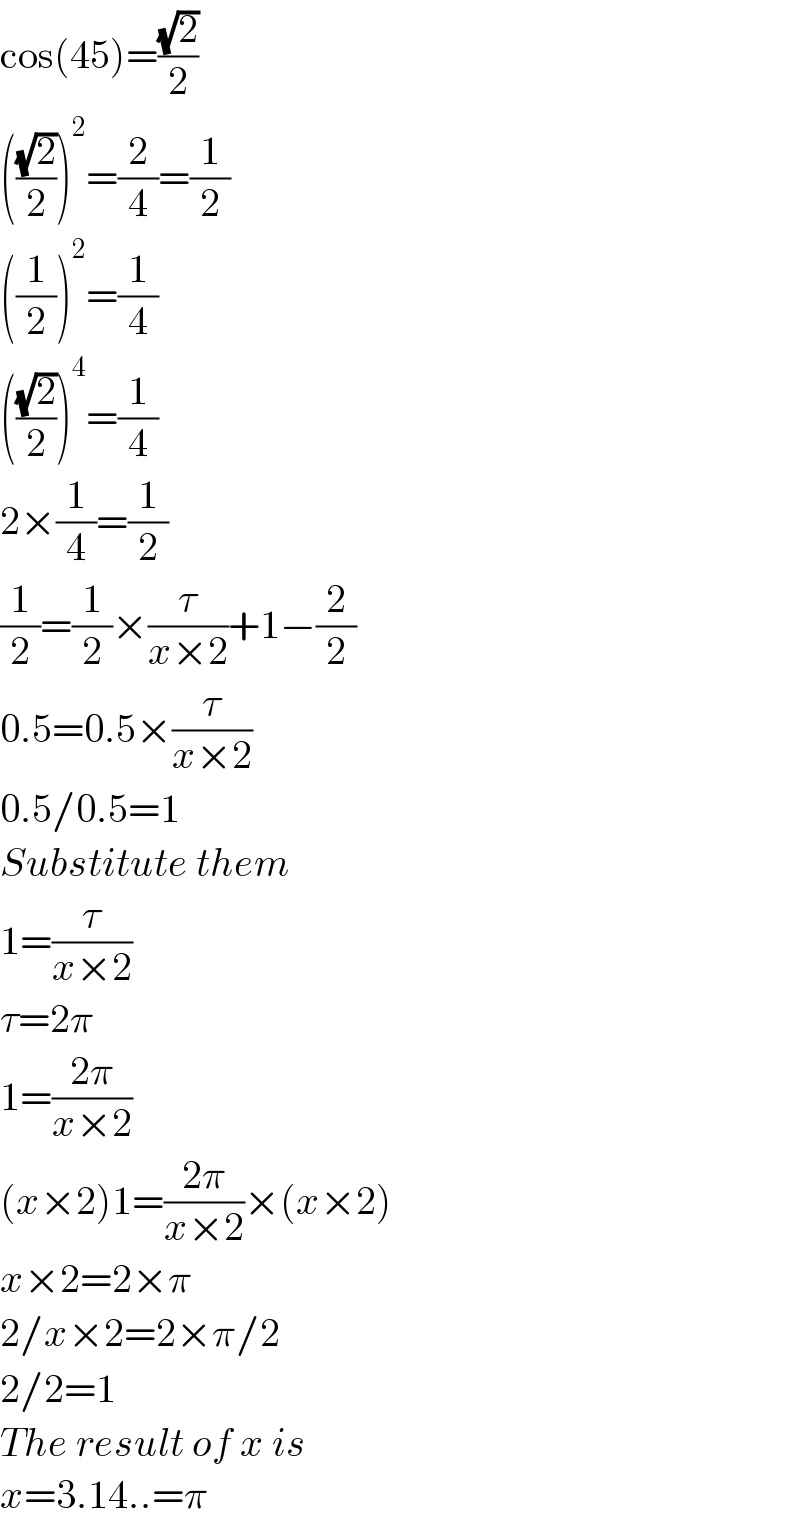 cos(45)=((√2)/2)  (((√2)/2))^2 =(2/4)=(1/2)  ((1/2))^2 =(1/4)  (((√2)/2))^4 =(1/4)  2×(1/4)=(1/2)  (1/2)=(1/2)×(τ/(x×2))+1−(2/2)  0.5=0.5×(τ/(x×2))  0.5/0.5=1  Substitute them  1=(τ/(x×2))  τ=2π  1=((2π)/(x×2))  (x×2)1=((2π)/(x×2))×(x×2)  x×2=2×π  2/x×2=2×π/2  2/2=1  The result of x is  x=3.14..=π  